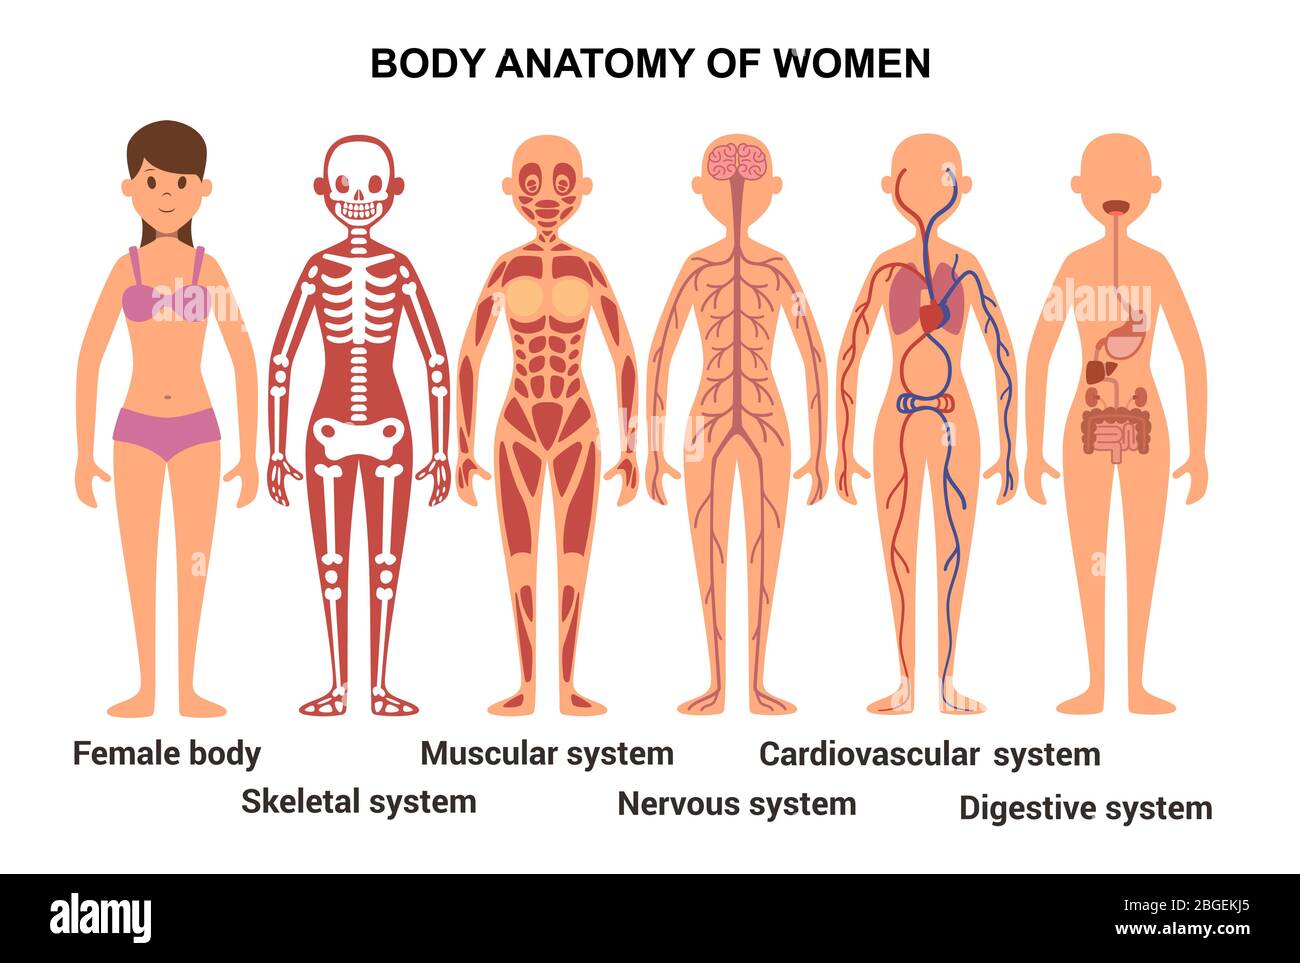 Anatomie des weiblichen Körpers. Anatomisches Poster. Skelett- und Muskelsystem, Nerven- und Kreislaufsystem, menschliches Verdauungssystem Stock Vektor